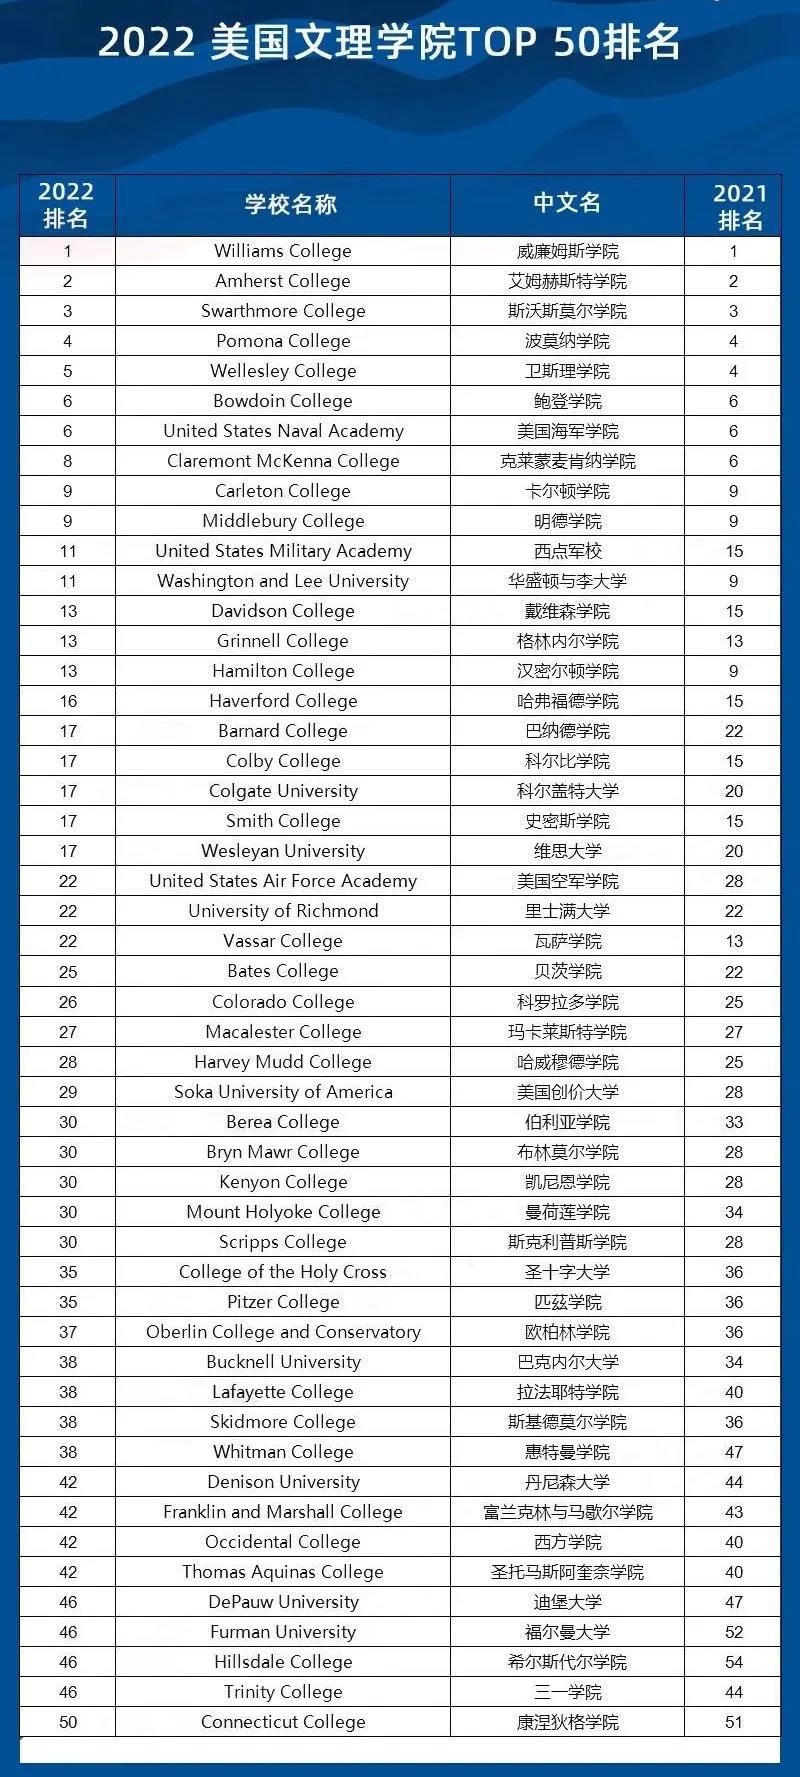 2022年USNews TOP50最佳文理学院TOP50.jpg